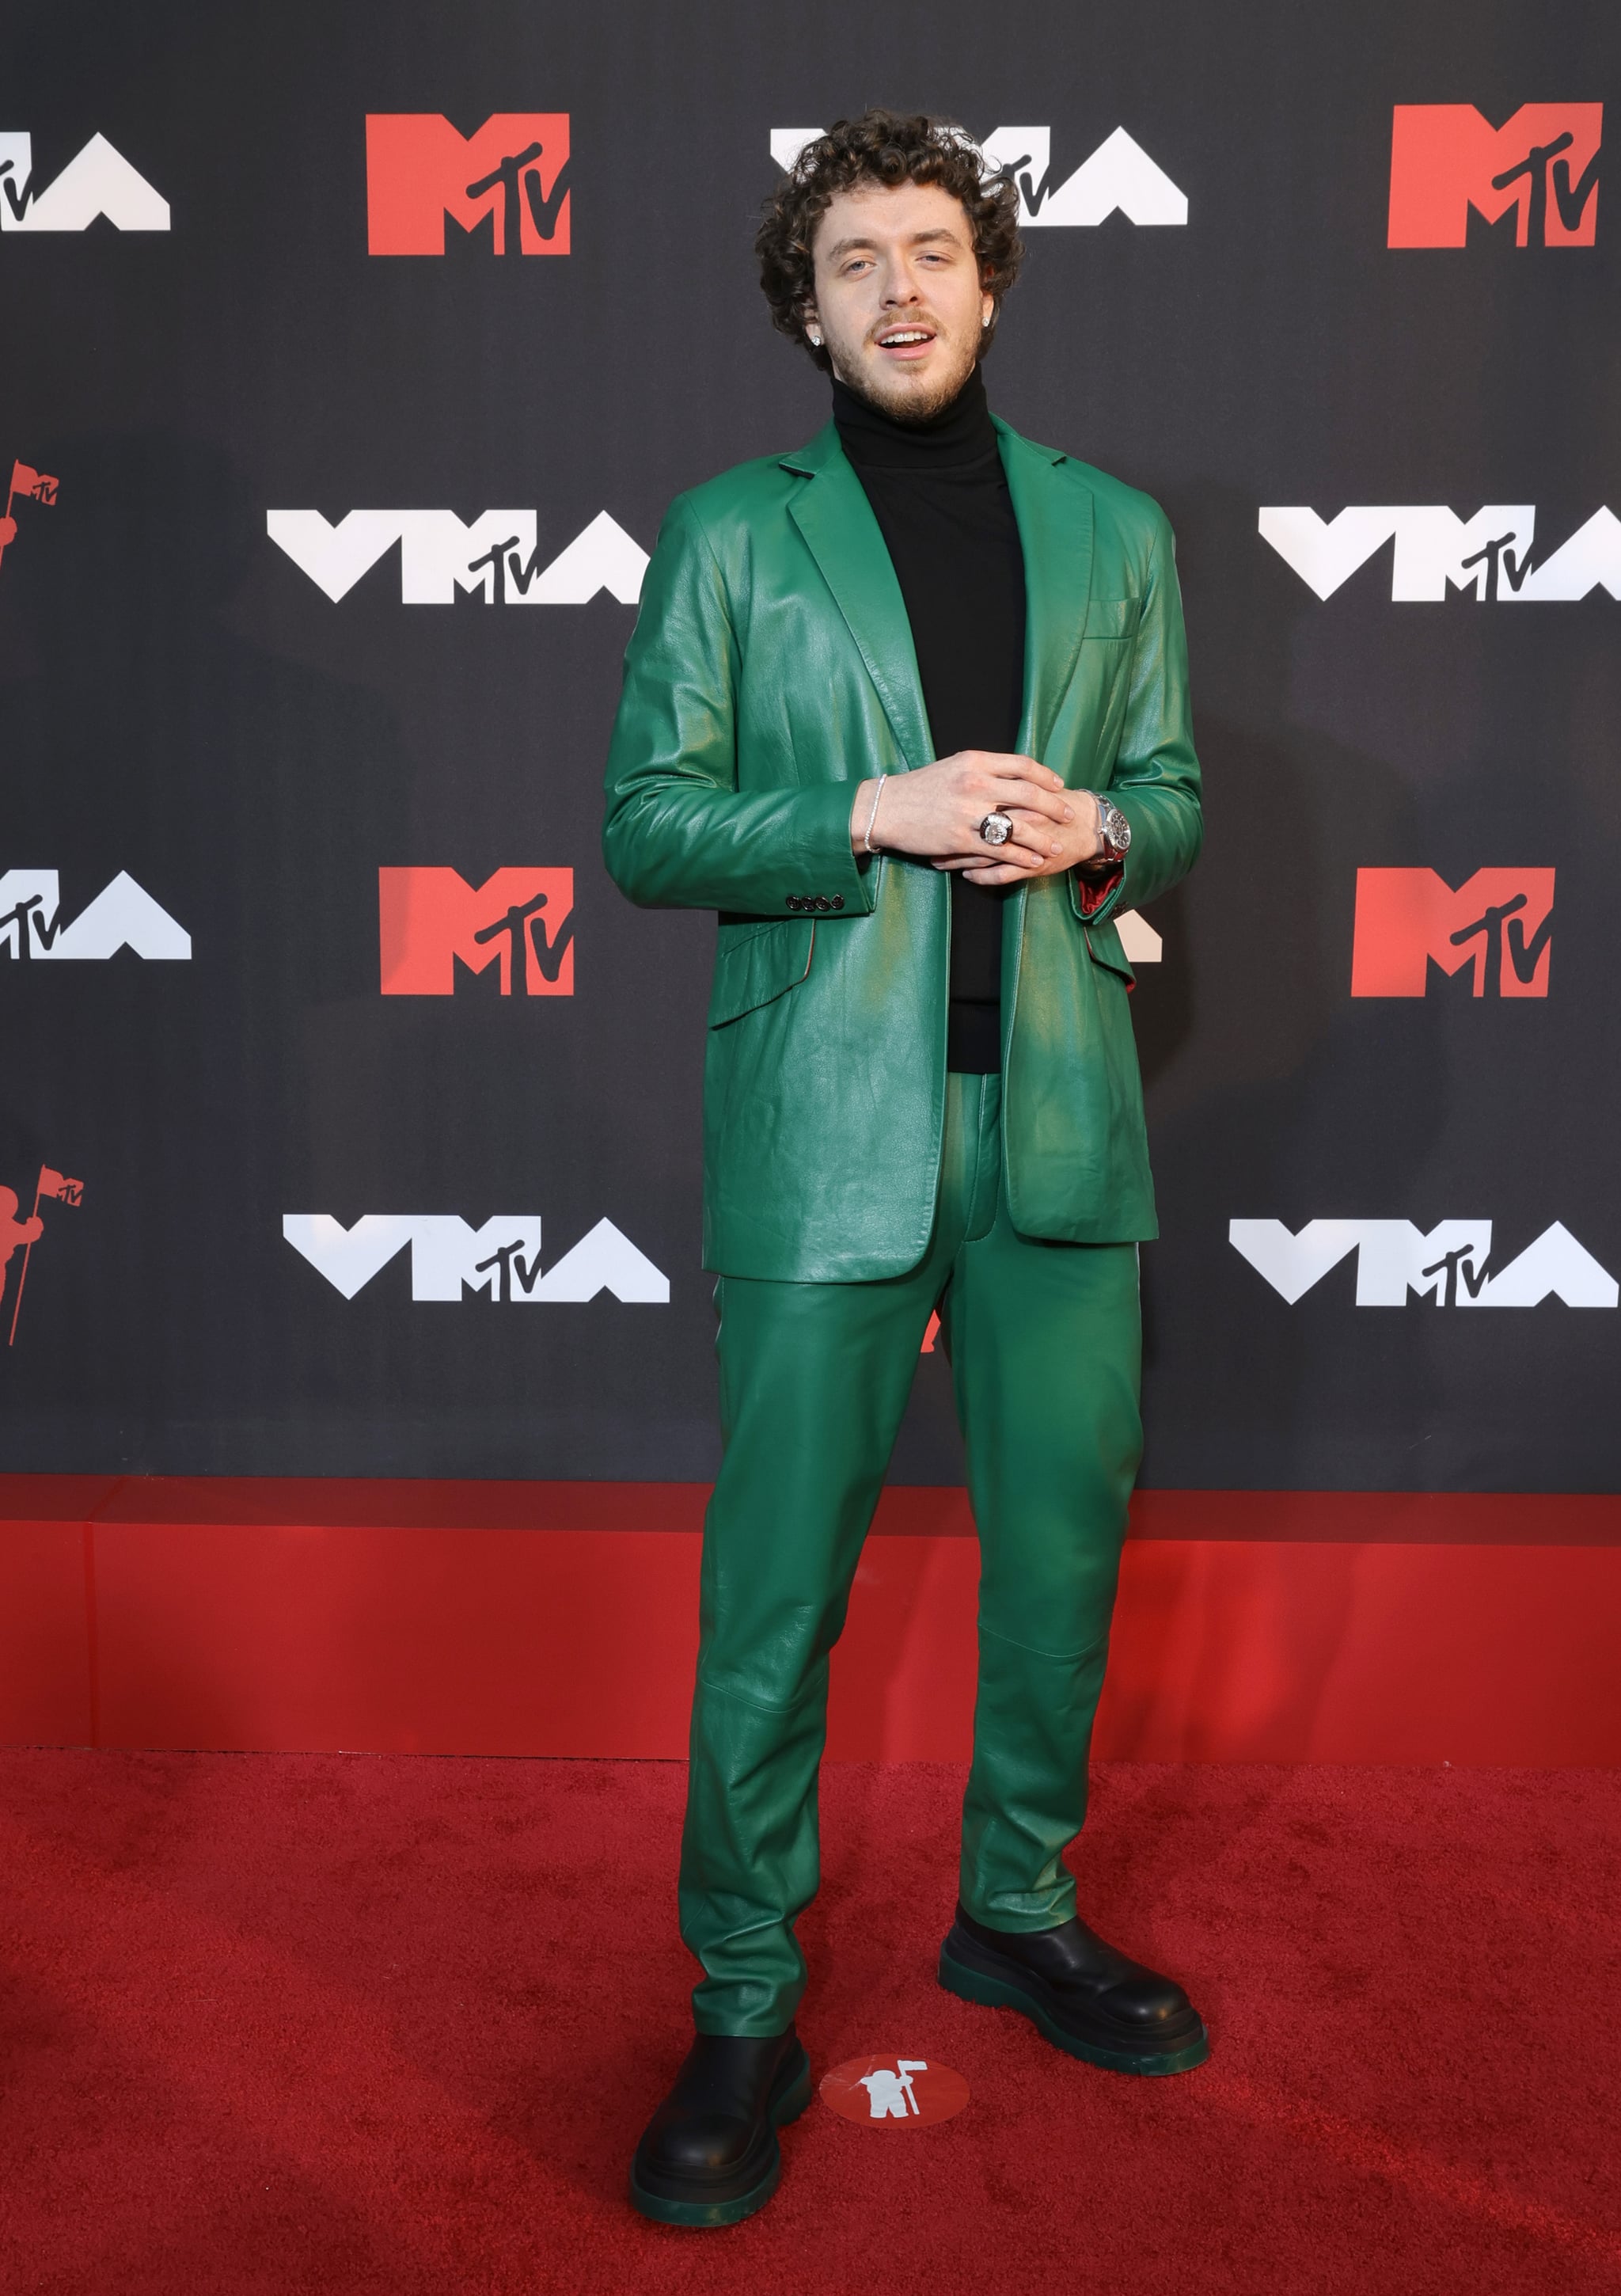 Jack Harlow at the 2021 MTV VMAs